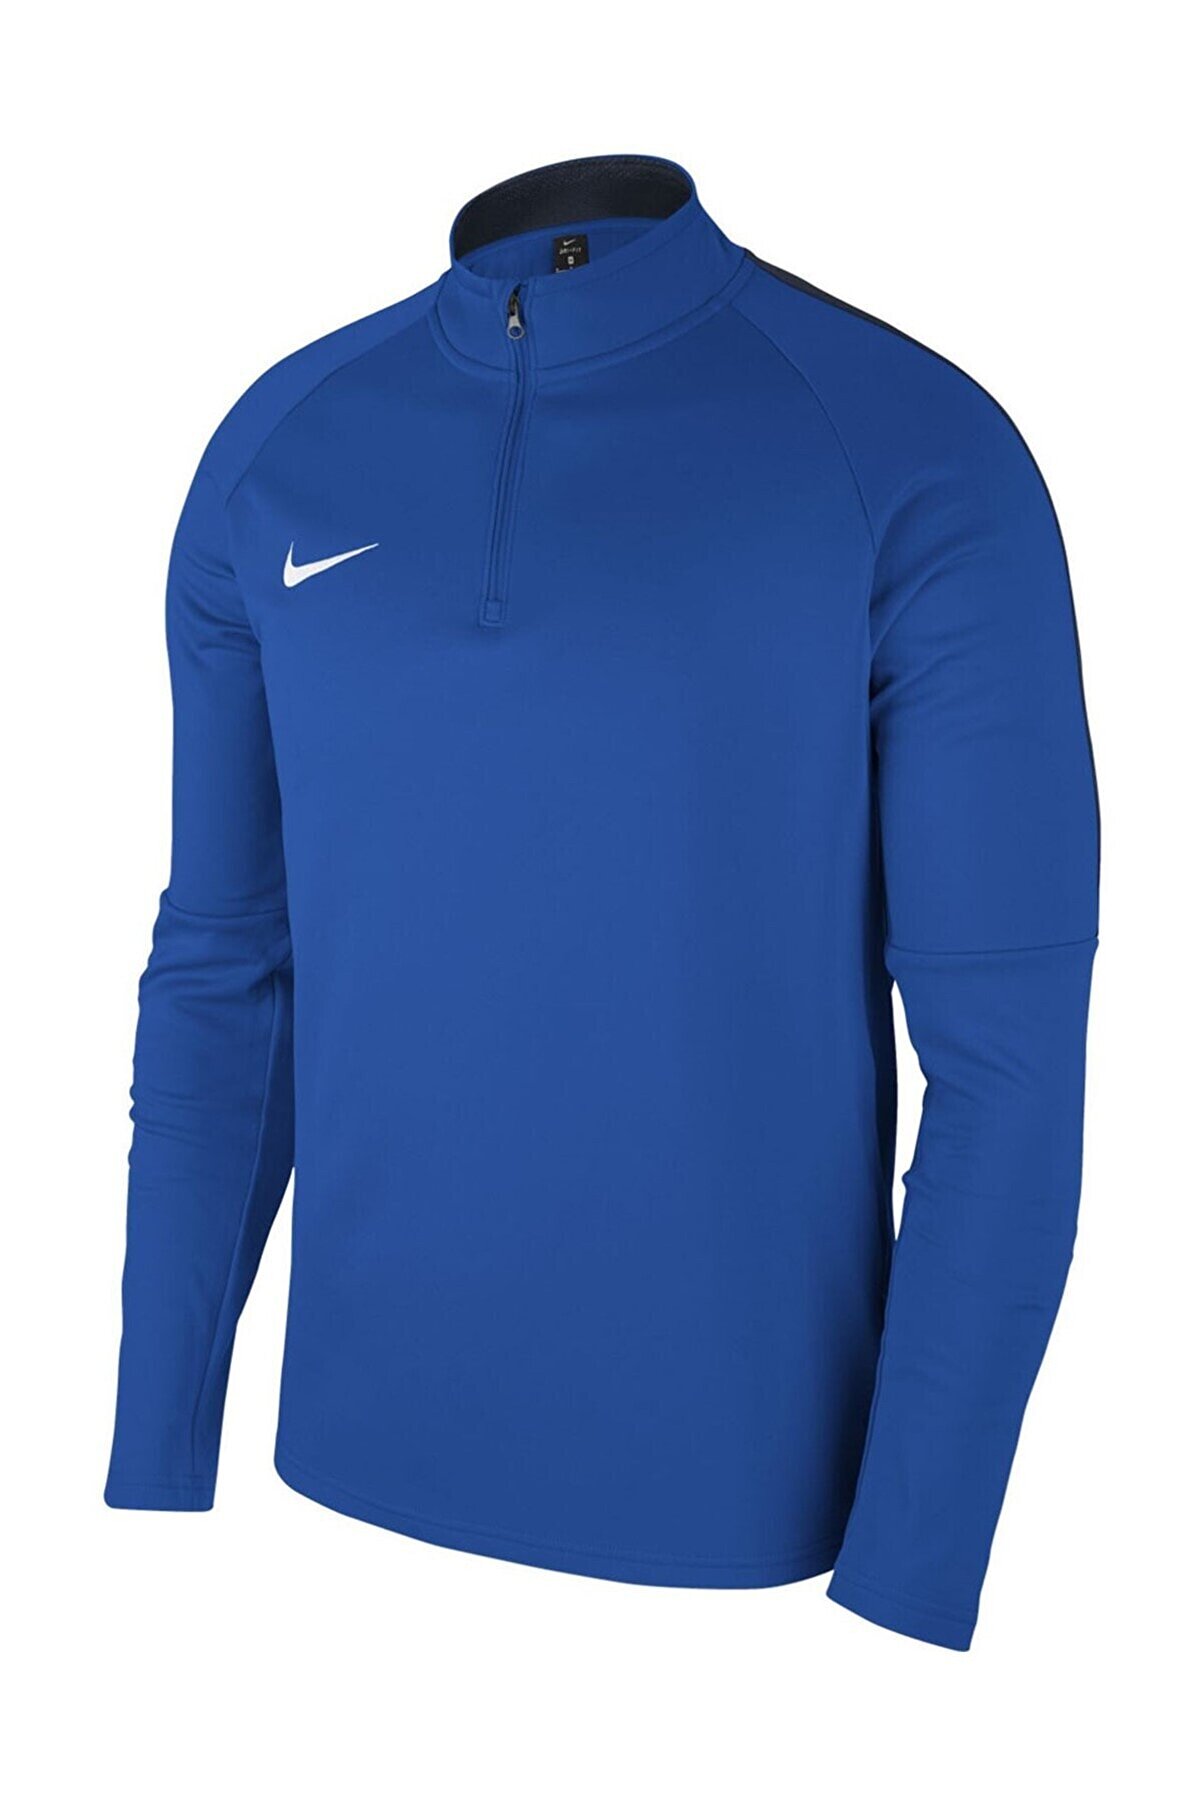 Nike Erkek Mavi M Nk Dry Acdmy18 Drıl Top Ls Sweatshirt 893624-463